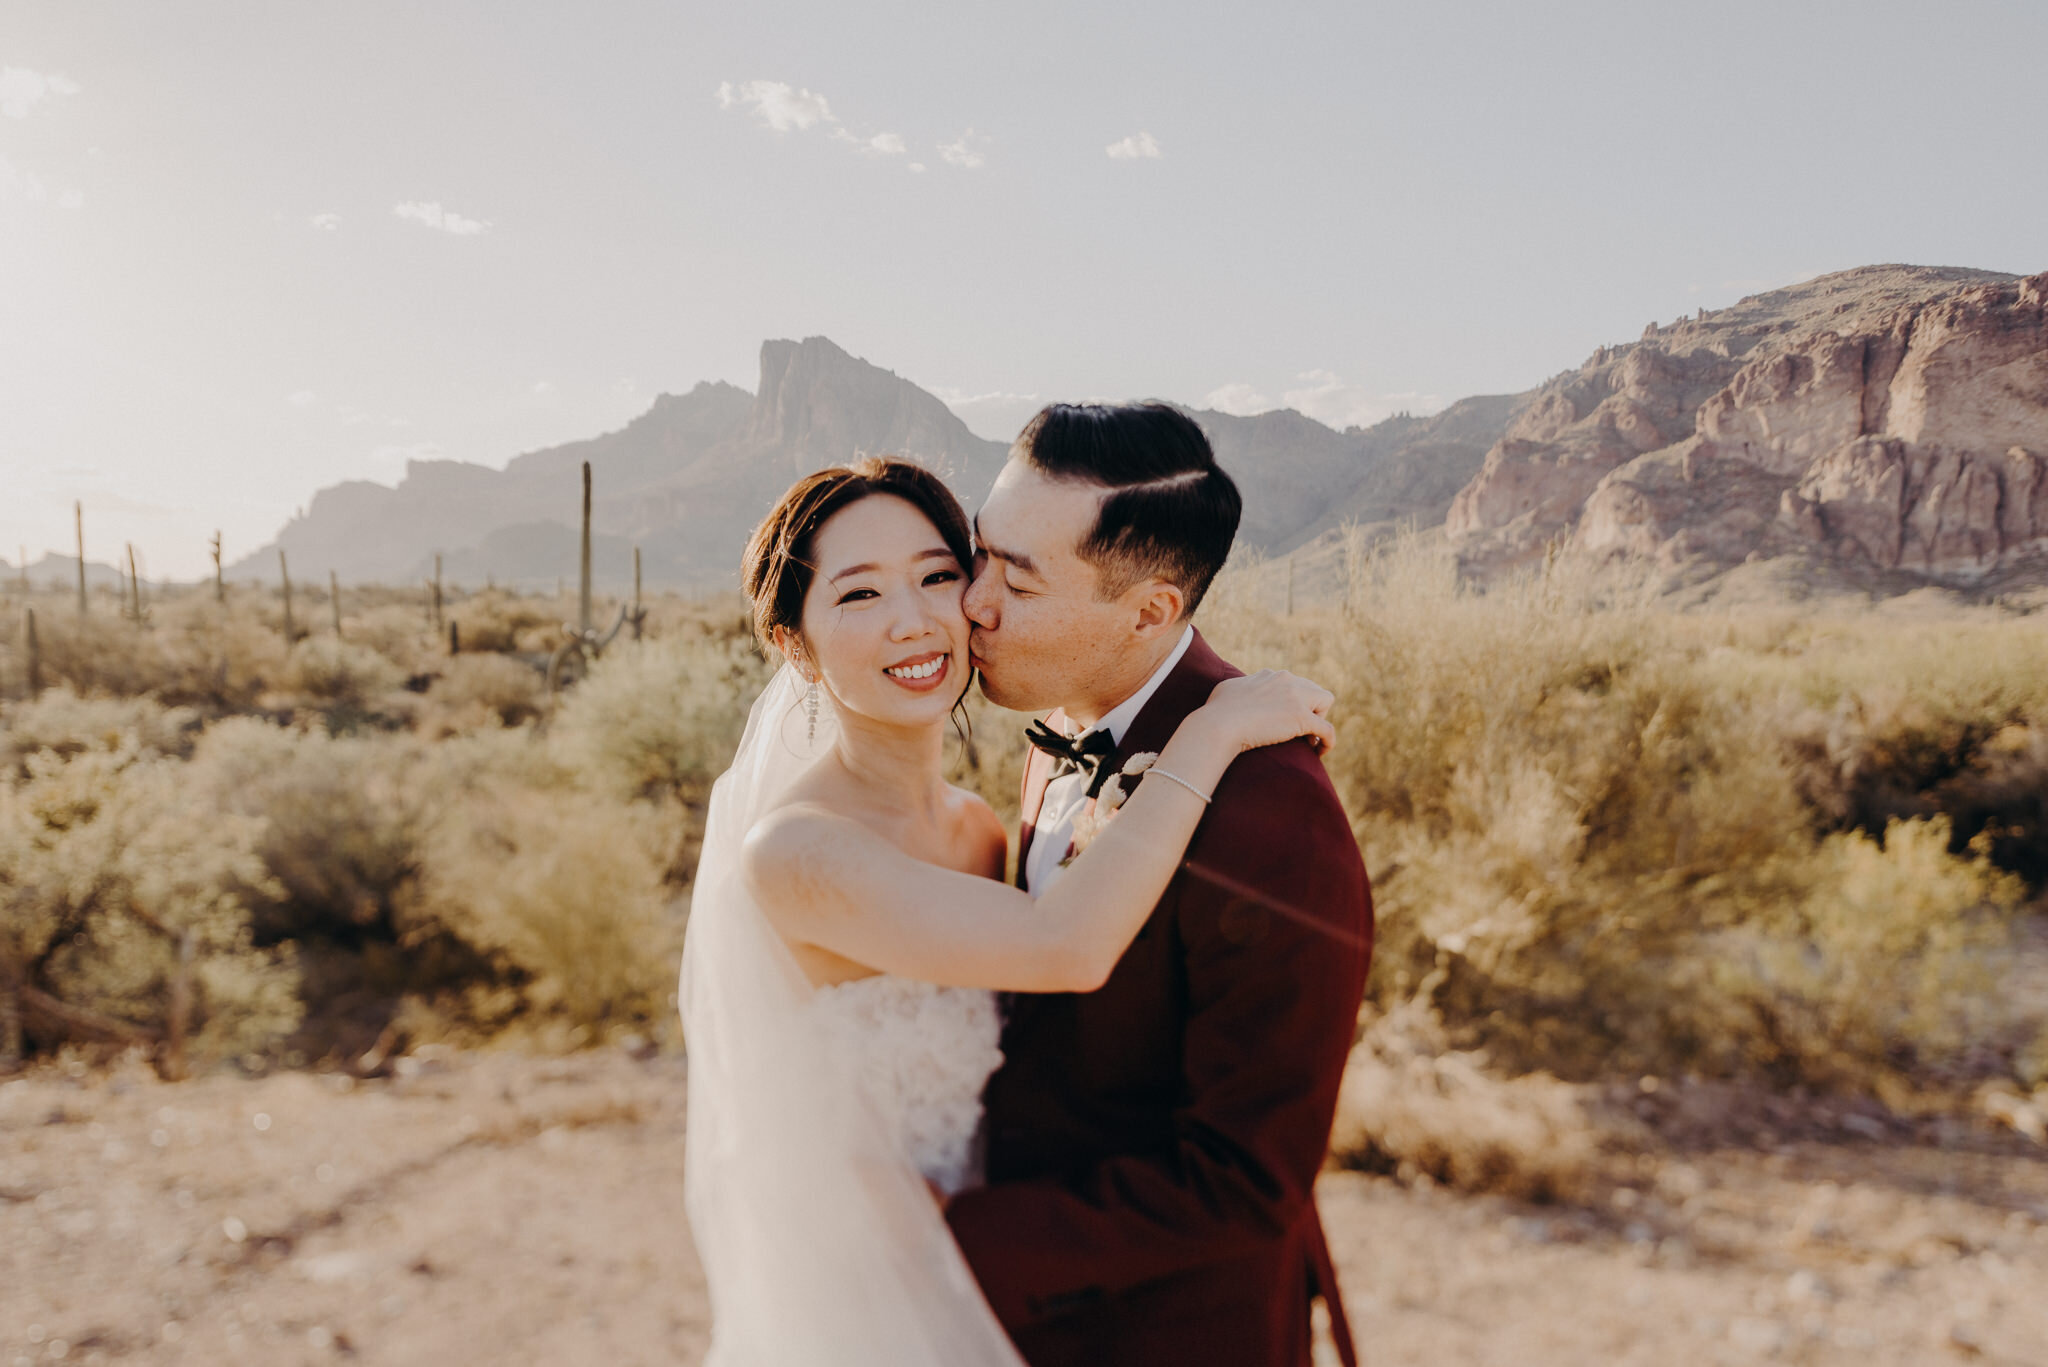 california wedding photograhers - desert elopement - supersition mountains - isaiahandtaylor.com-90.jpg